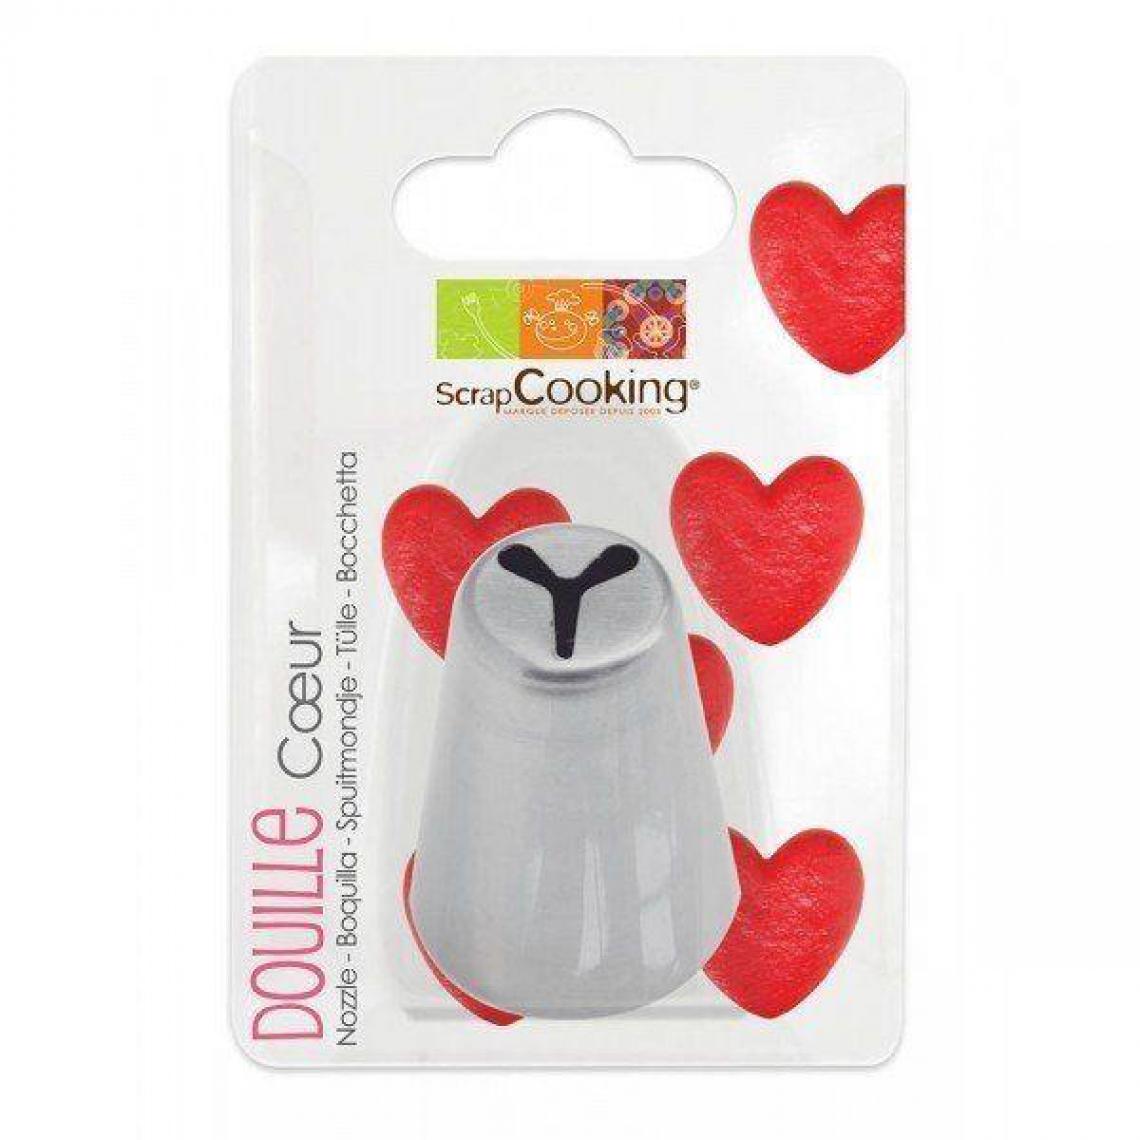 Scrapcooking - Douille à pâtisserie en inox - Coeur - Kits créatifs